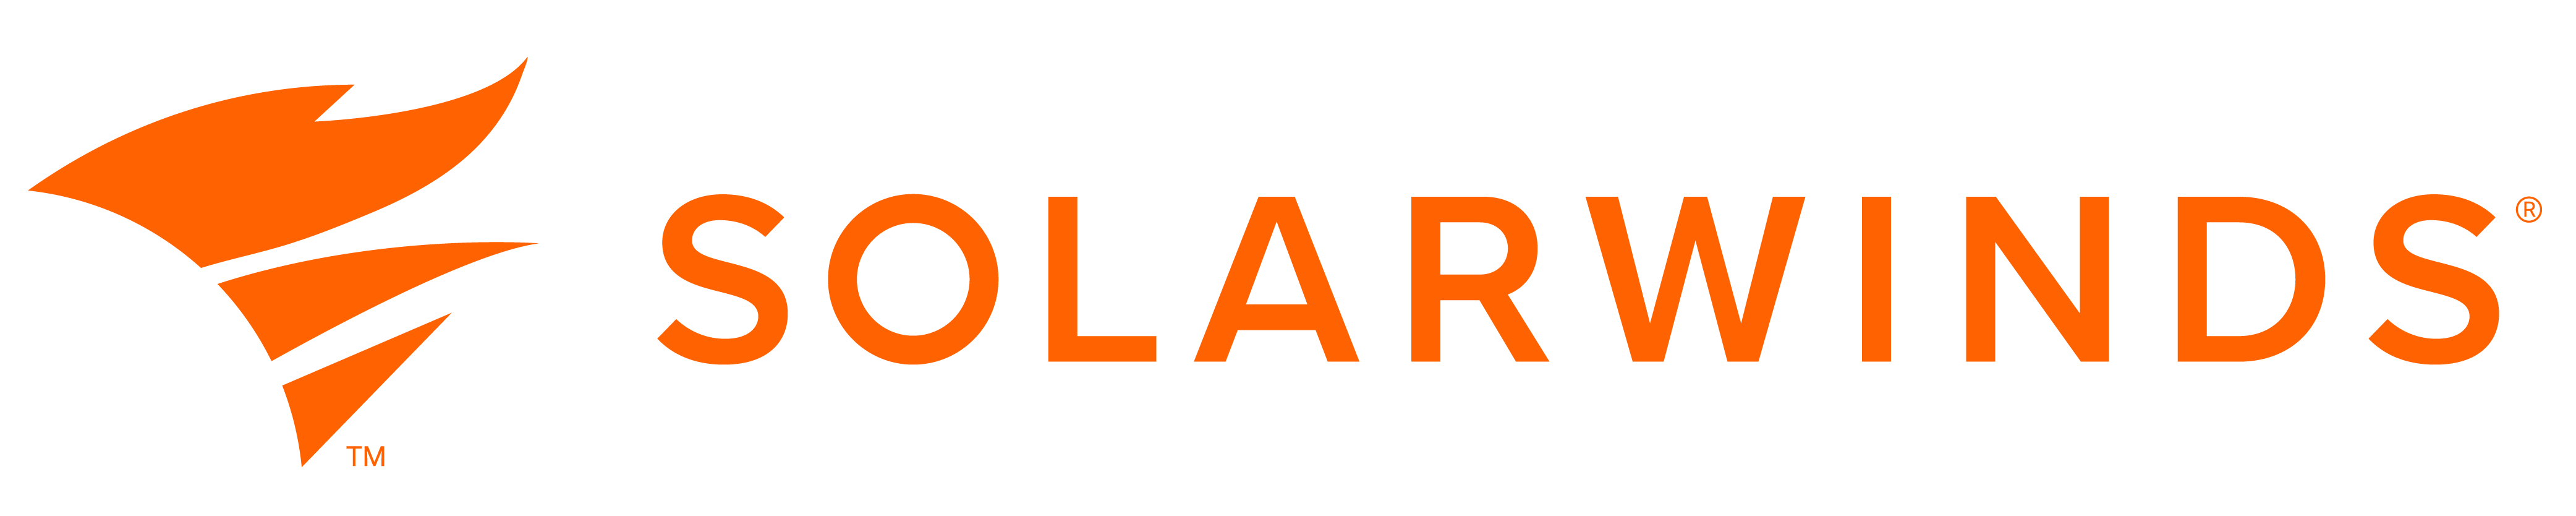 SolarWinds logo orange